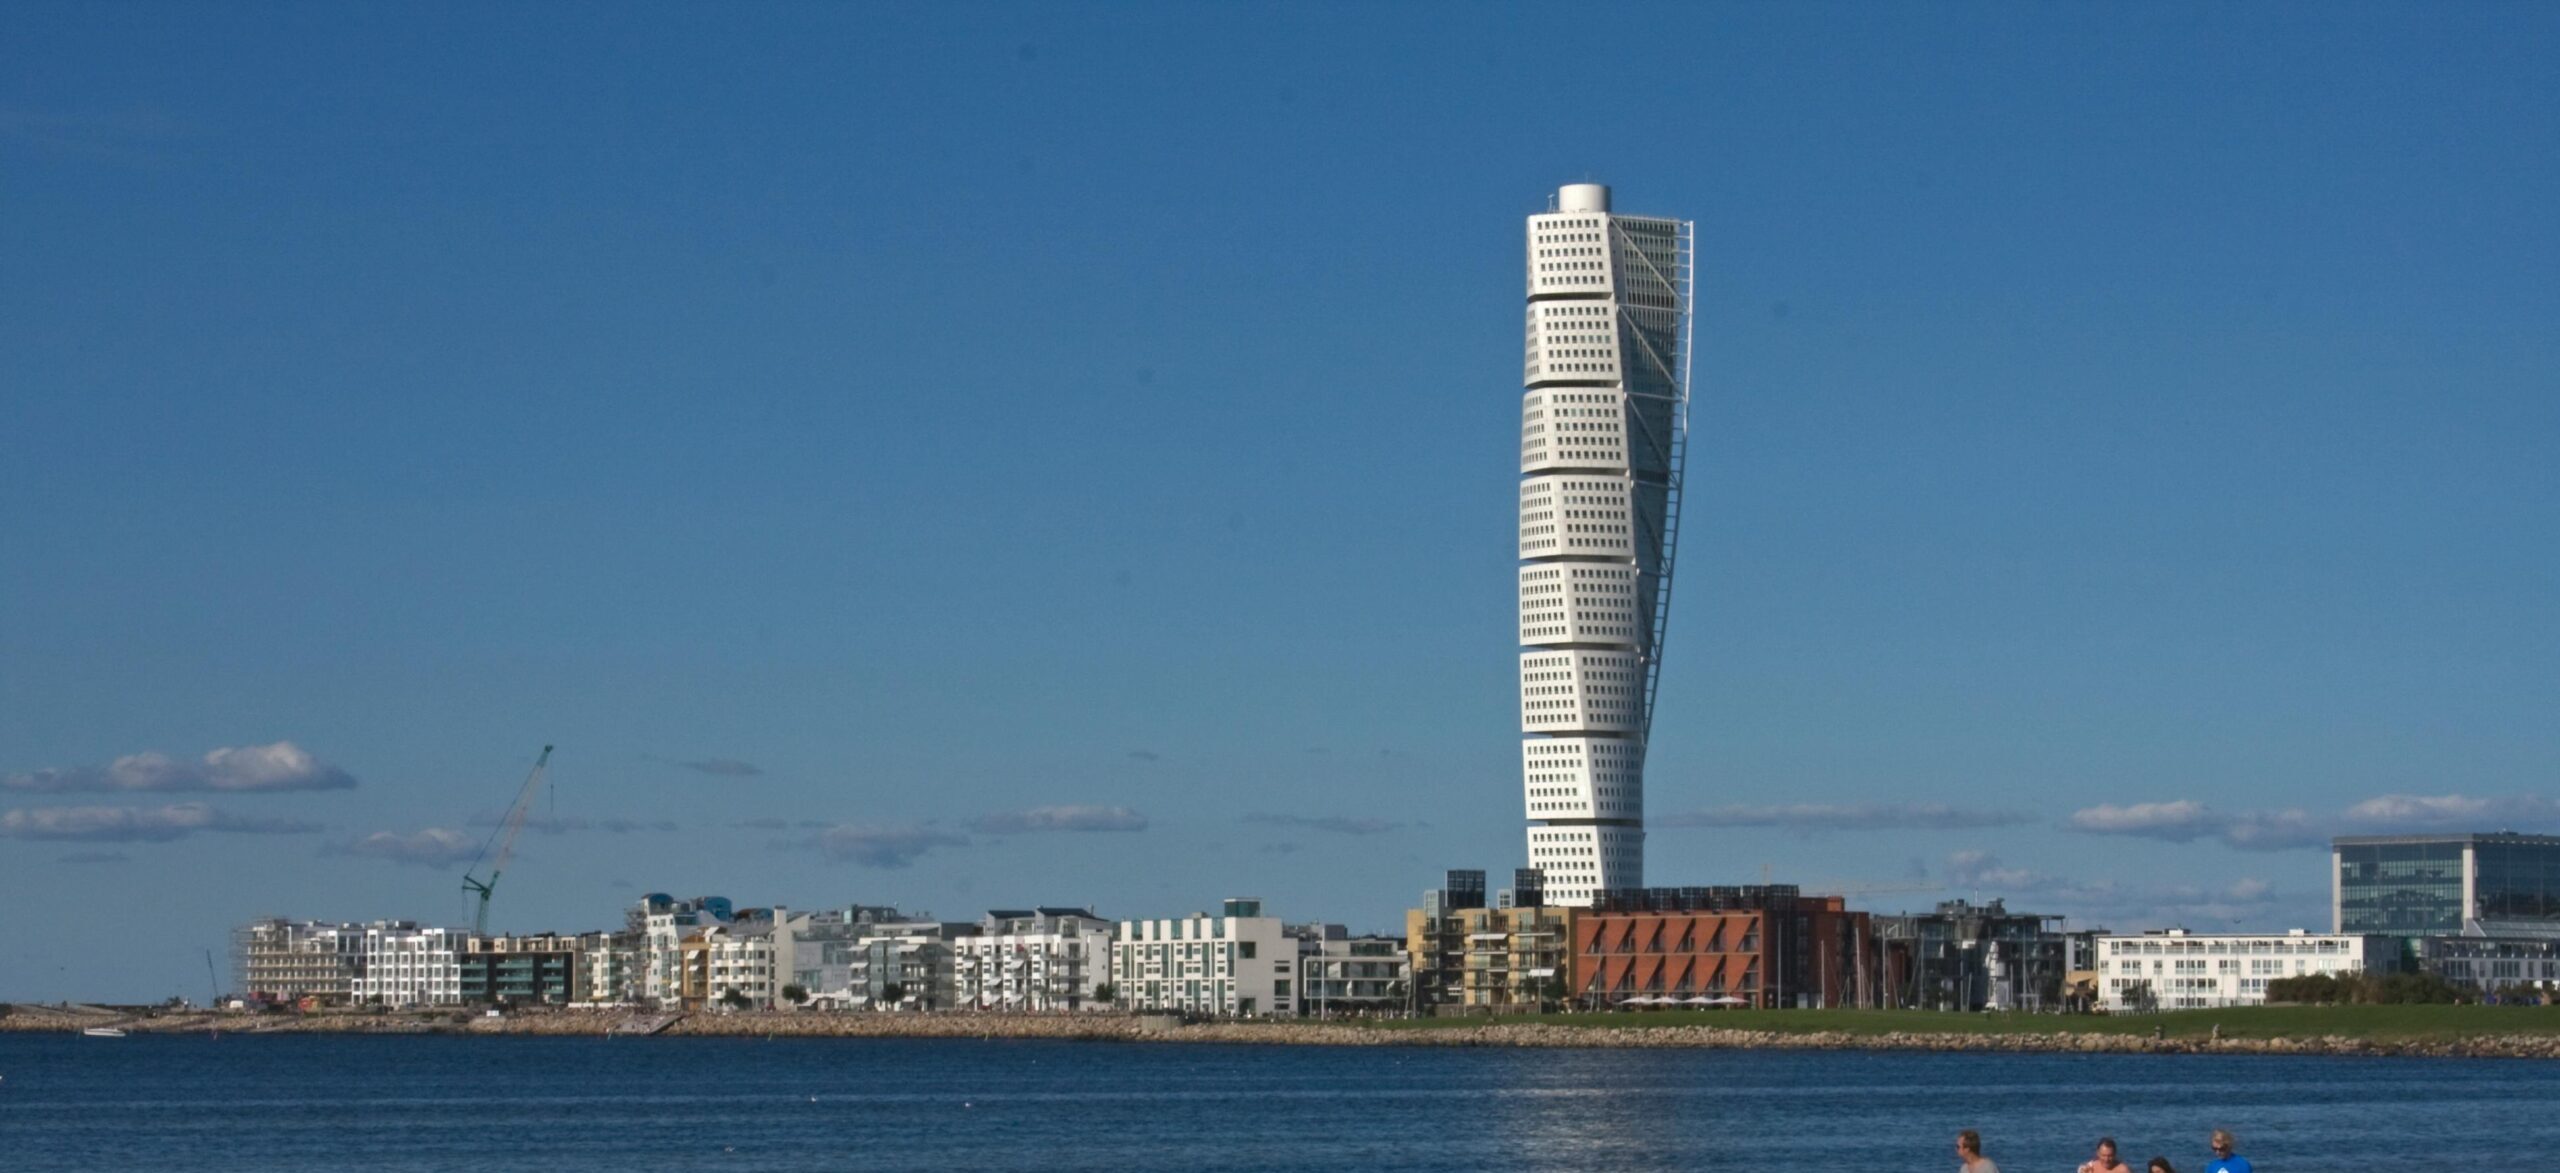 Dekorativ bild på Malmös västra hamnen